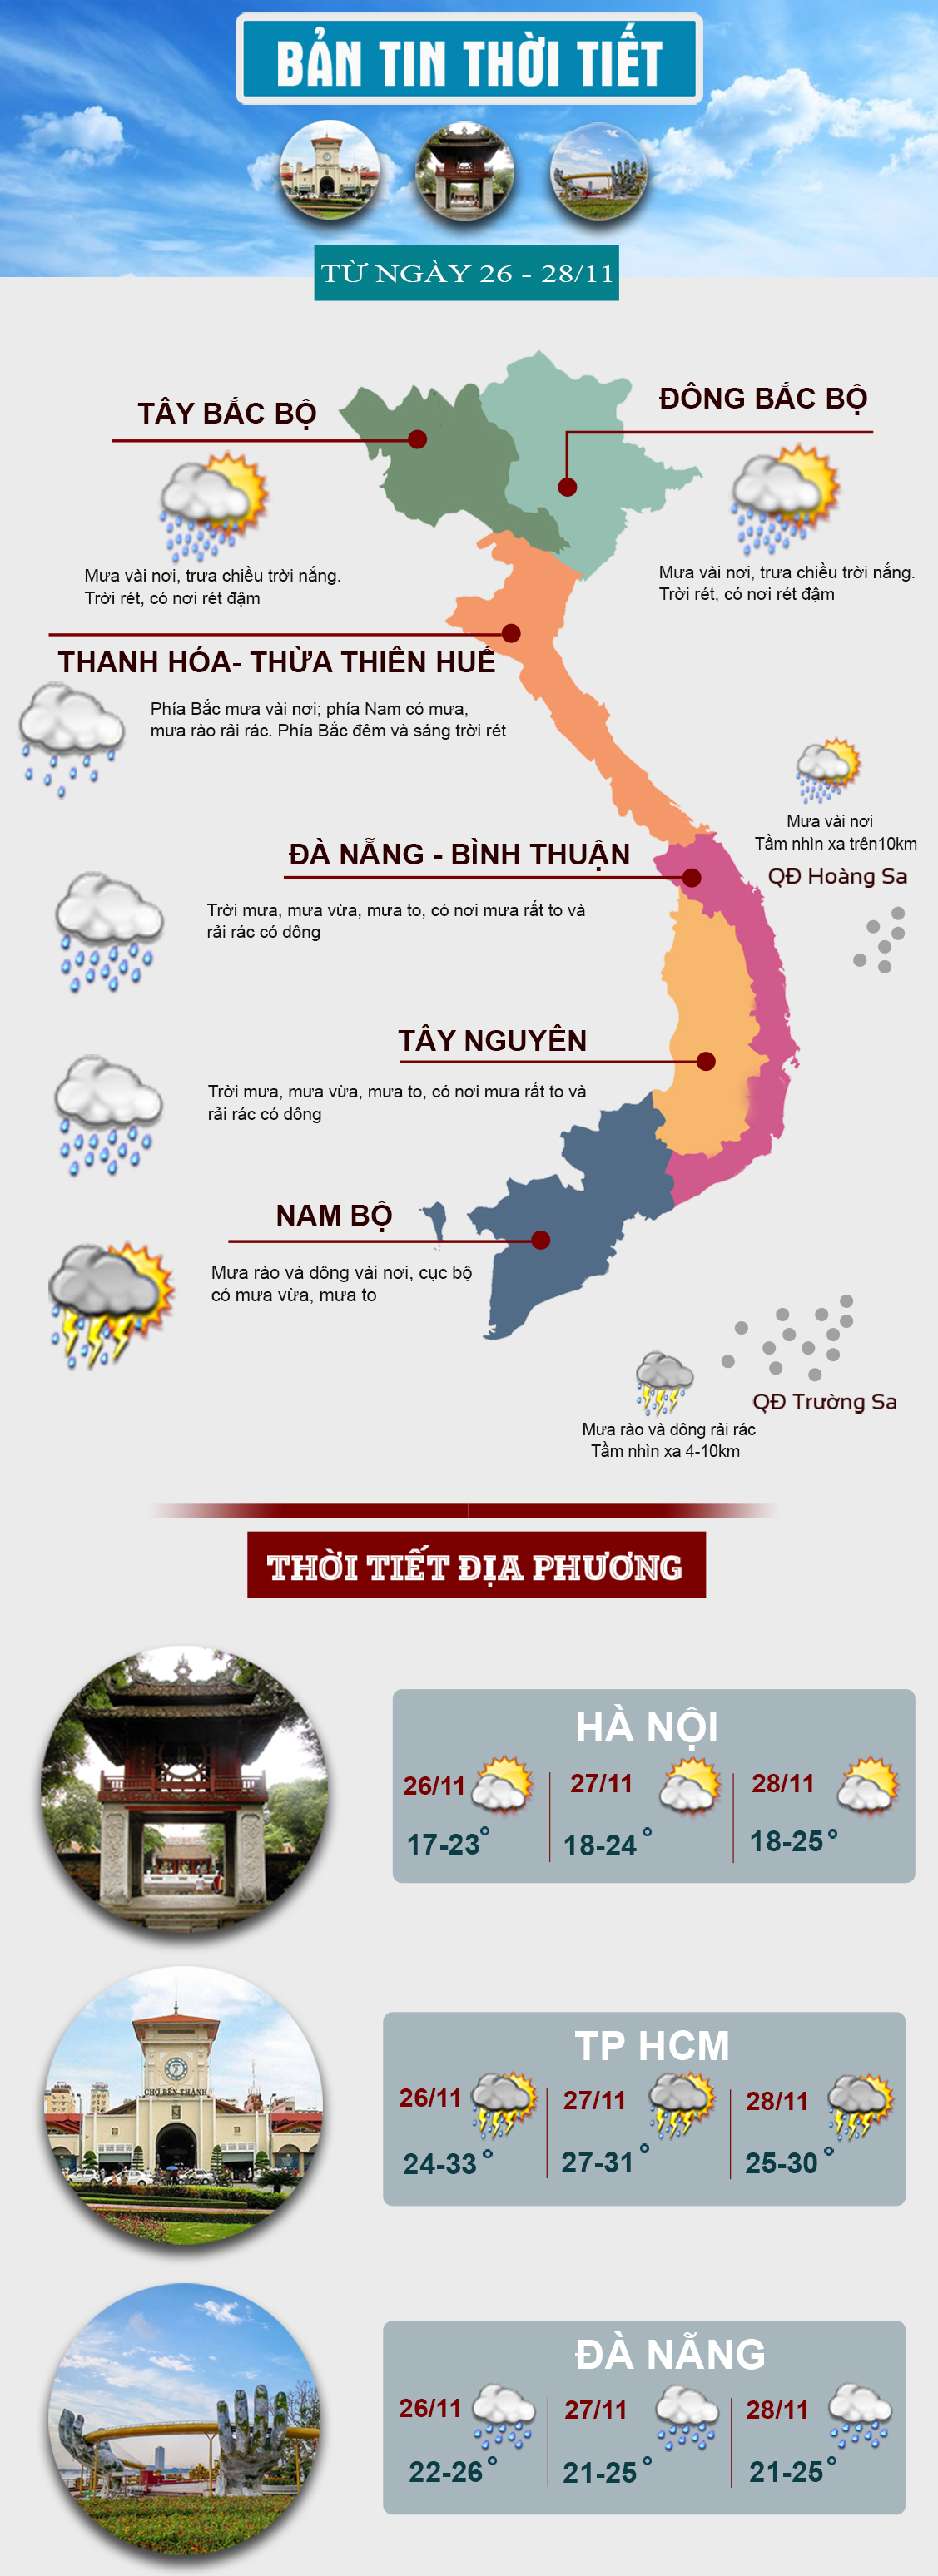 Thời tiết cuối tuần: Miền Bắc nắng hanh, miền Trung có mưa nhiều nơi - 1